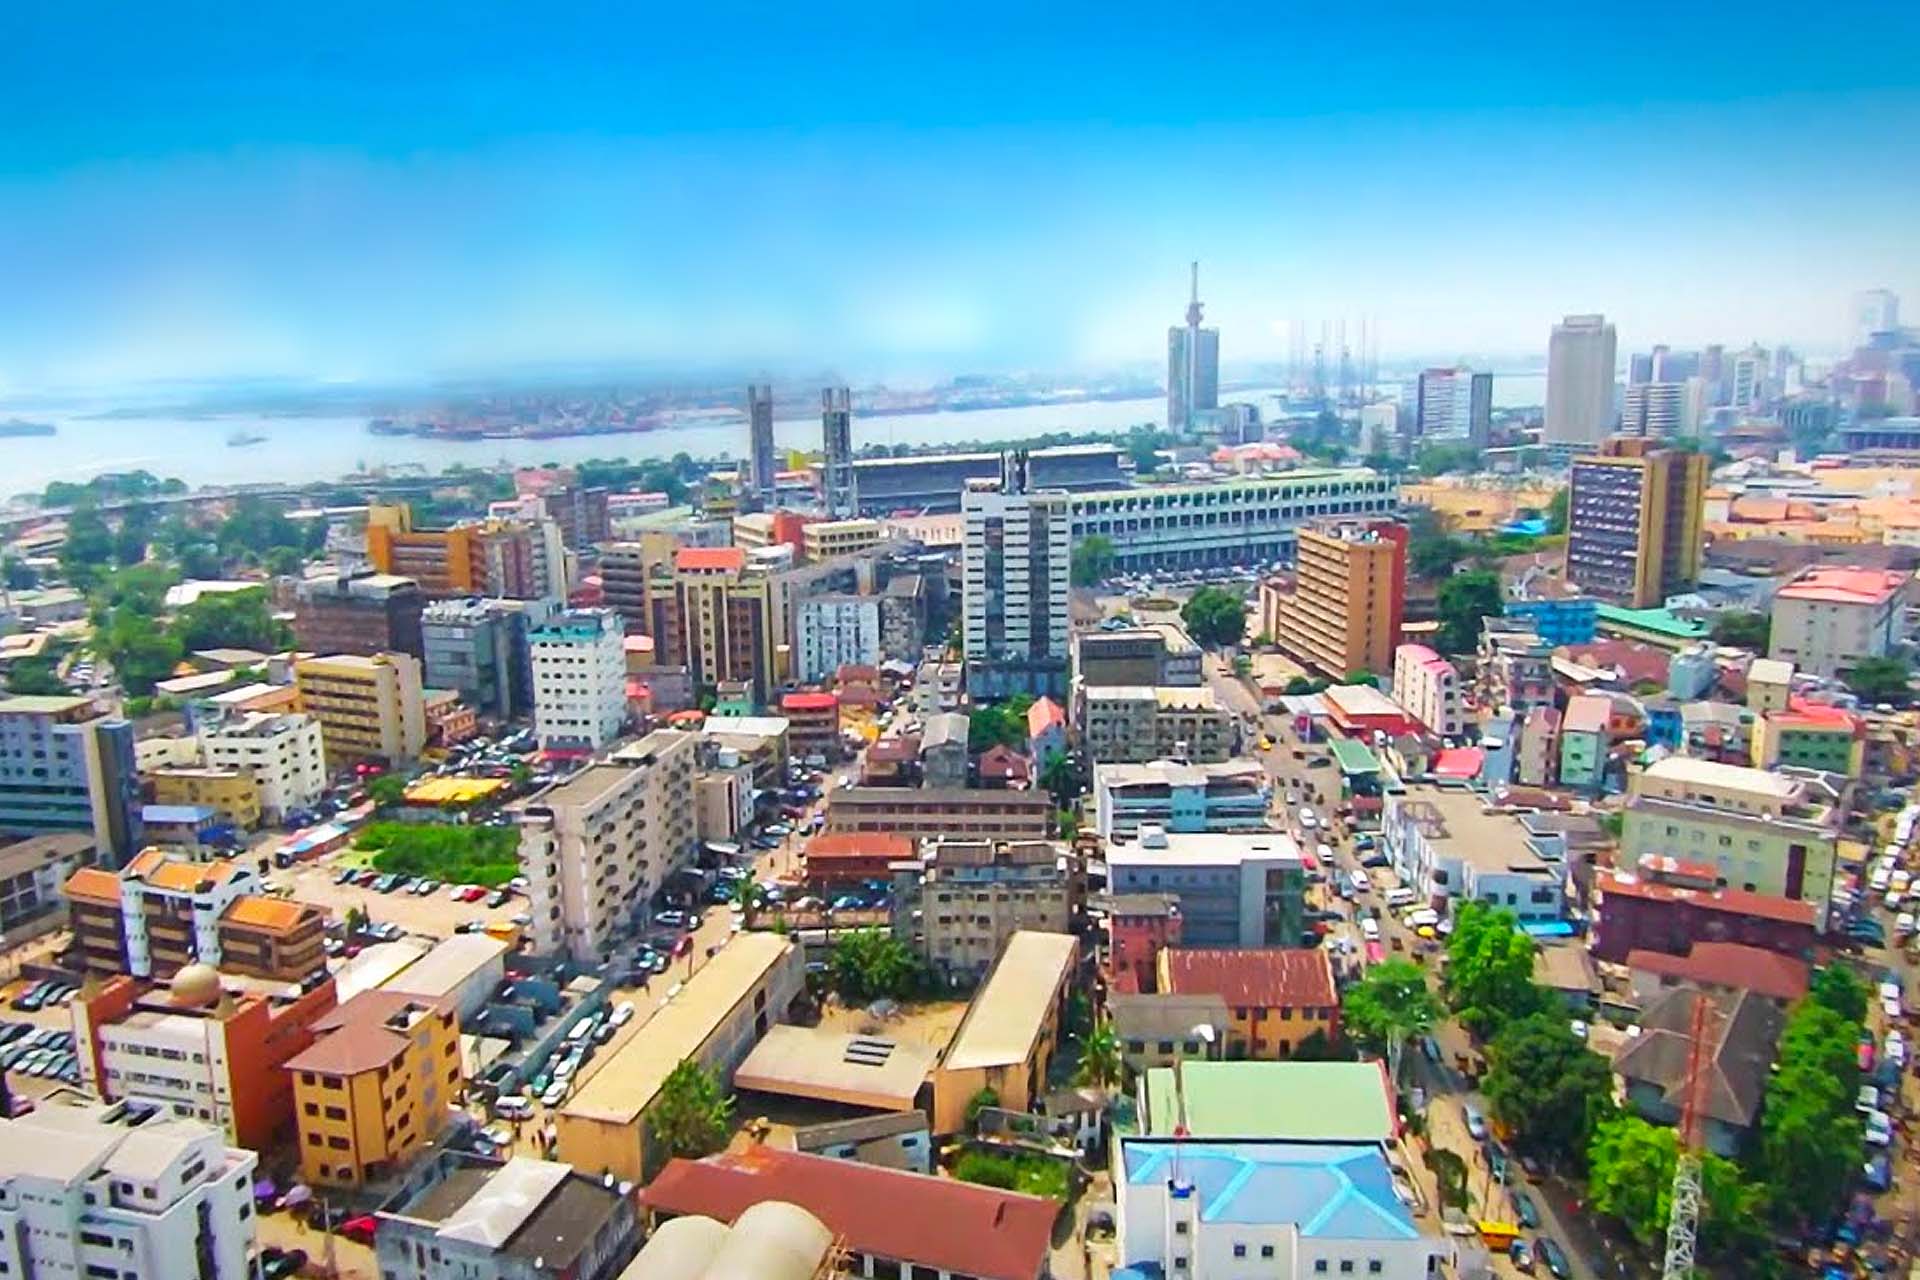 Beautiful Images Of Lagos; Nigeria's Economic Capital - Travel - Nigeria